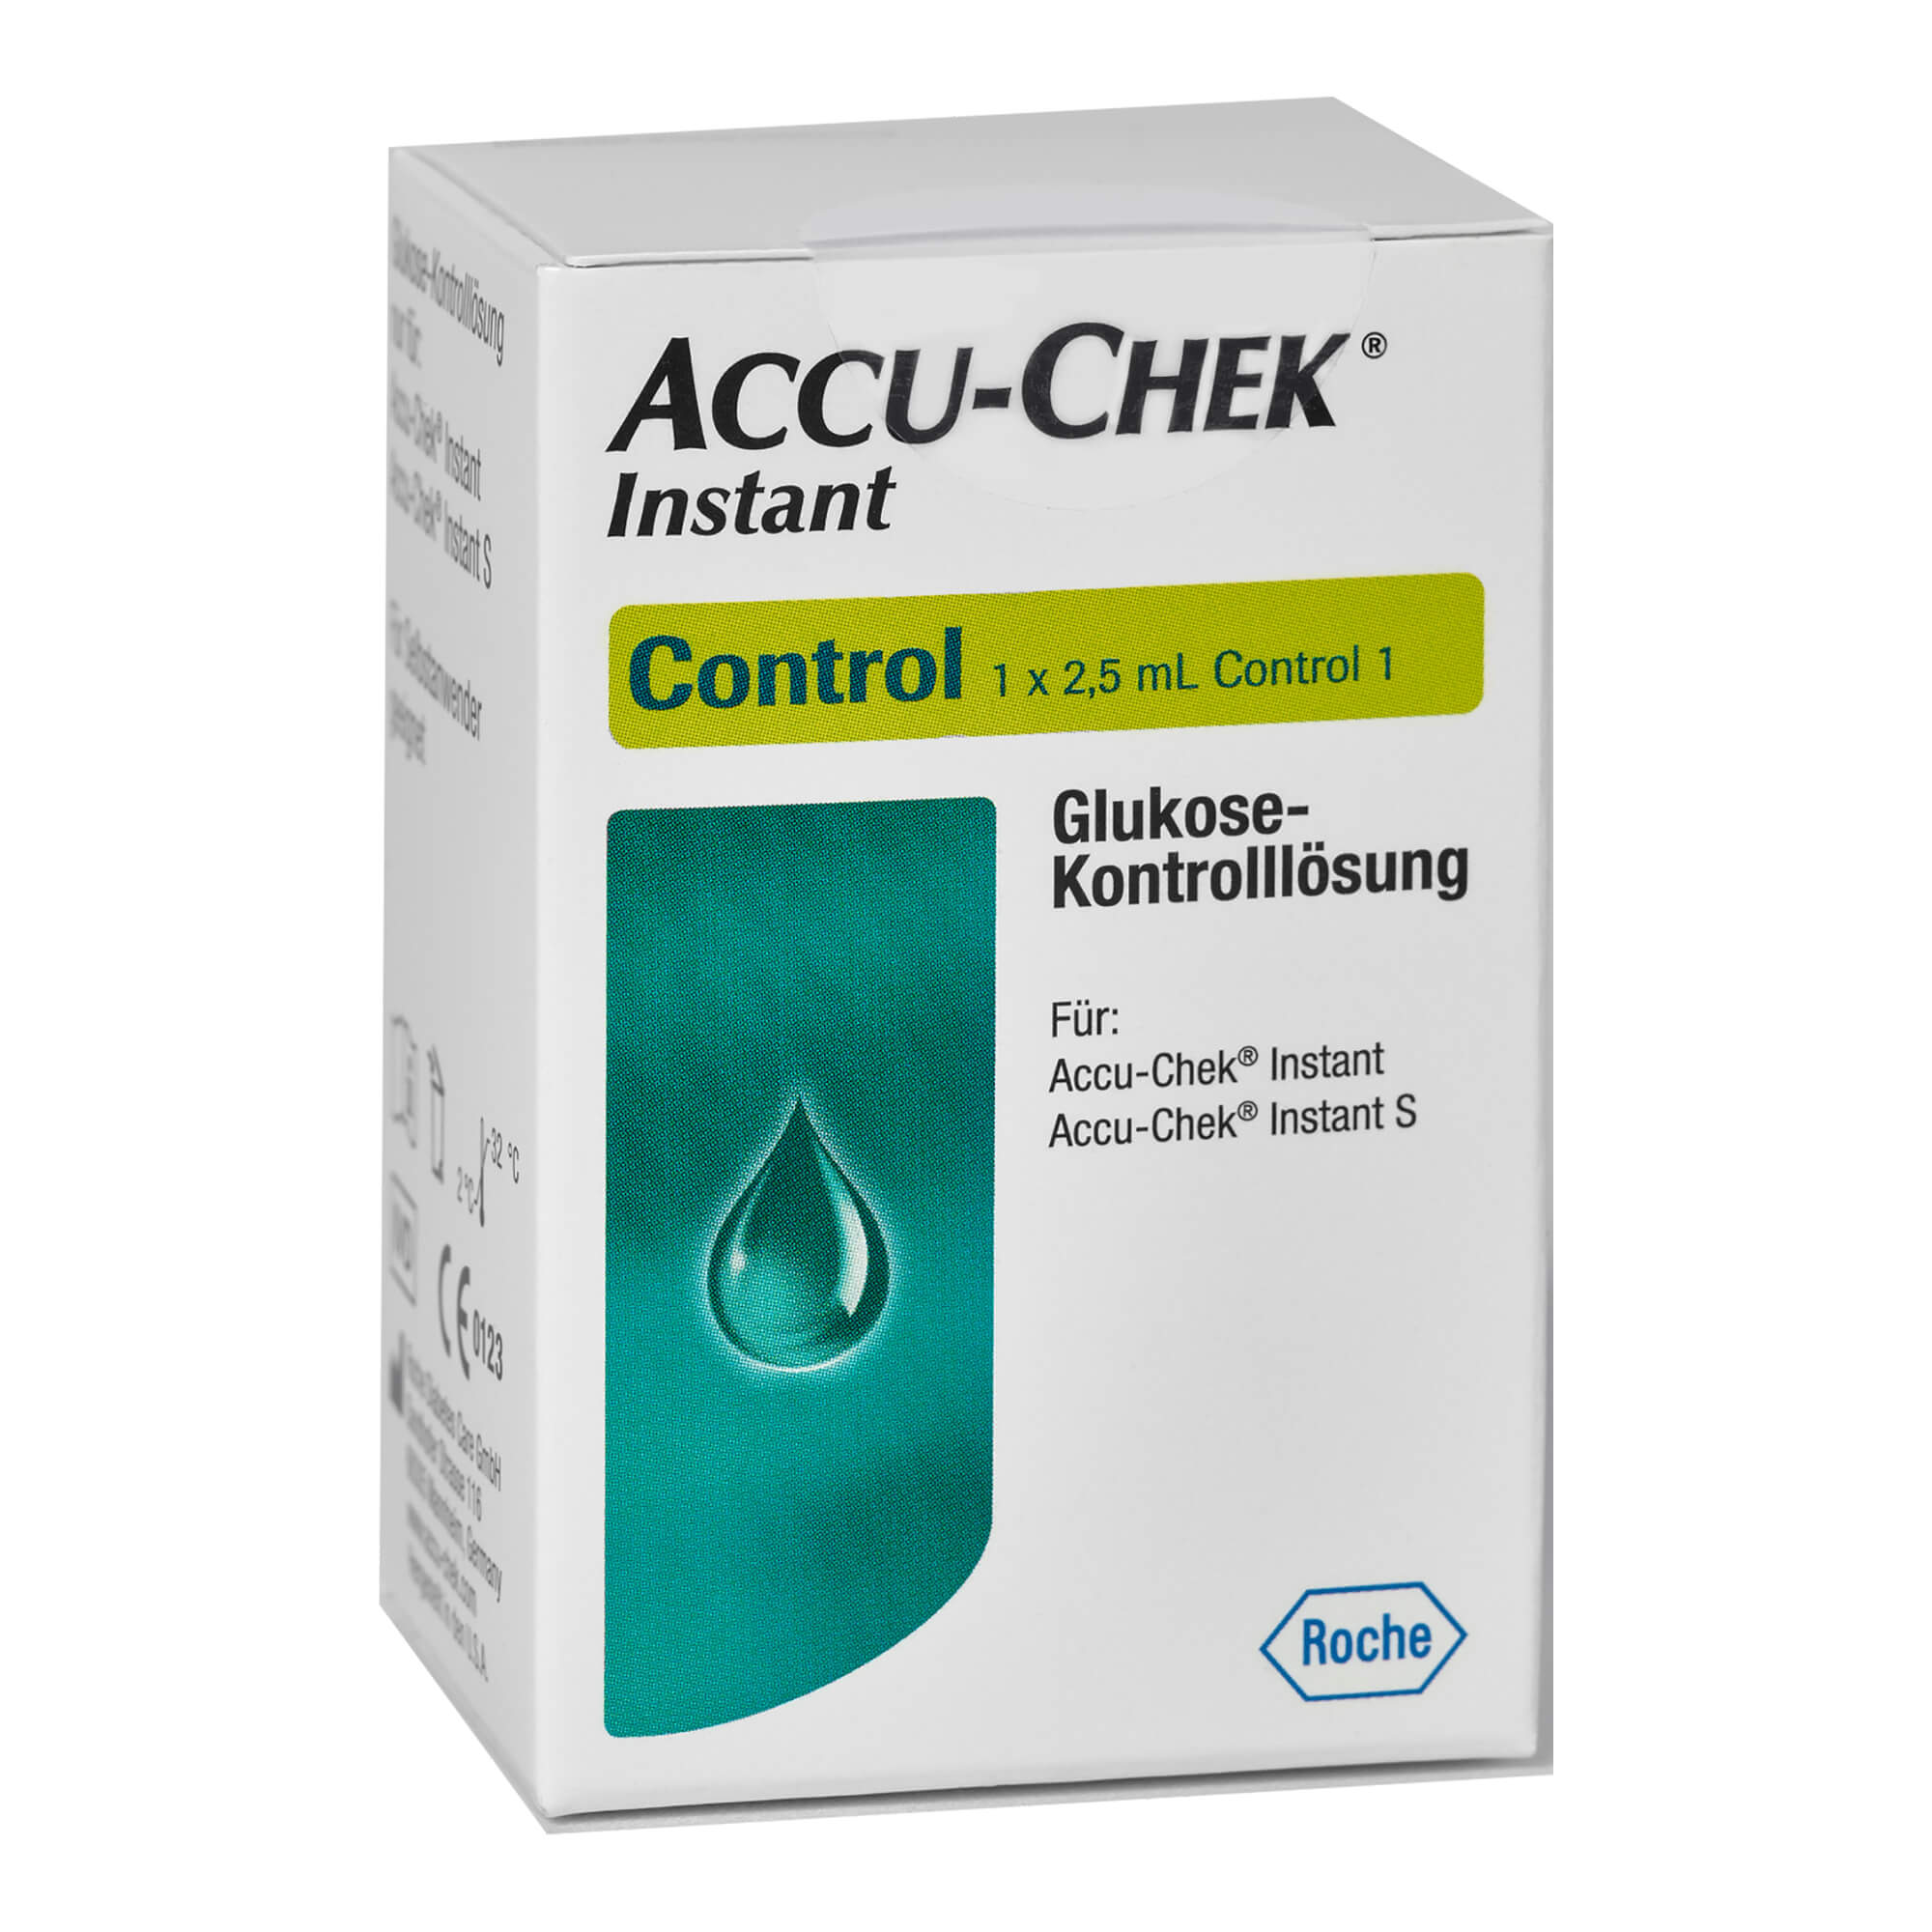 Zubehör zu den Accu-Chek Instant Blutzuckermessgeräten.